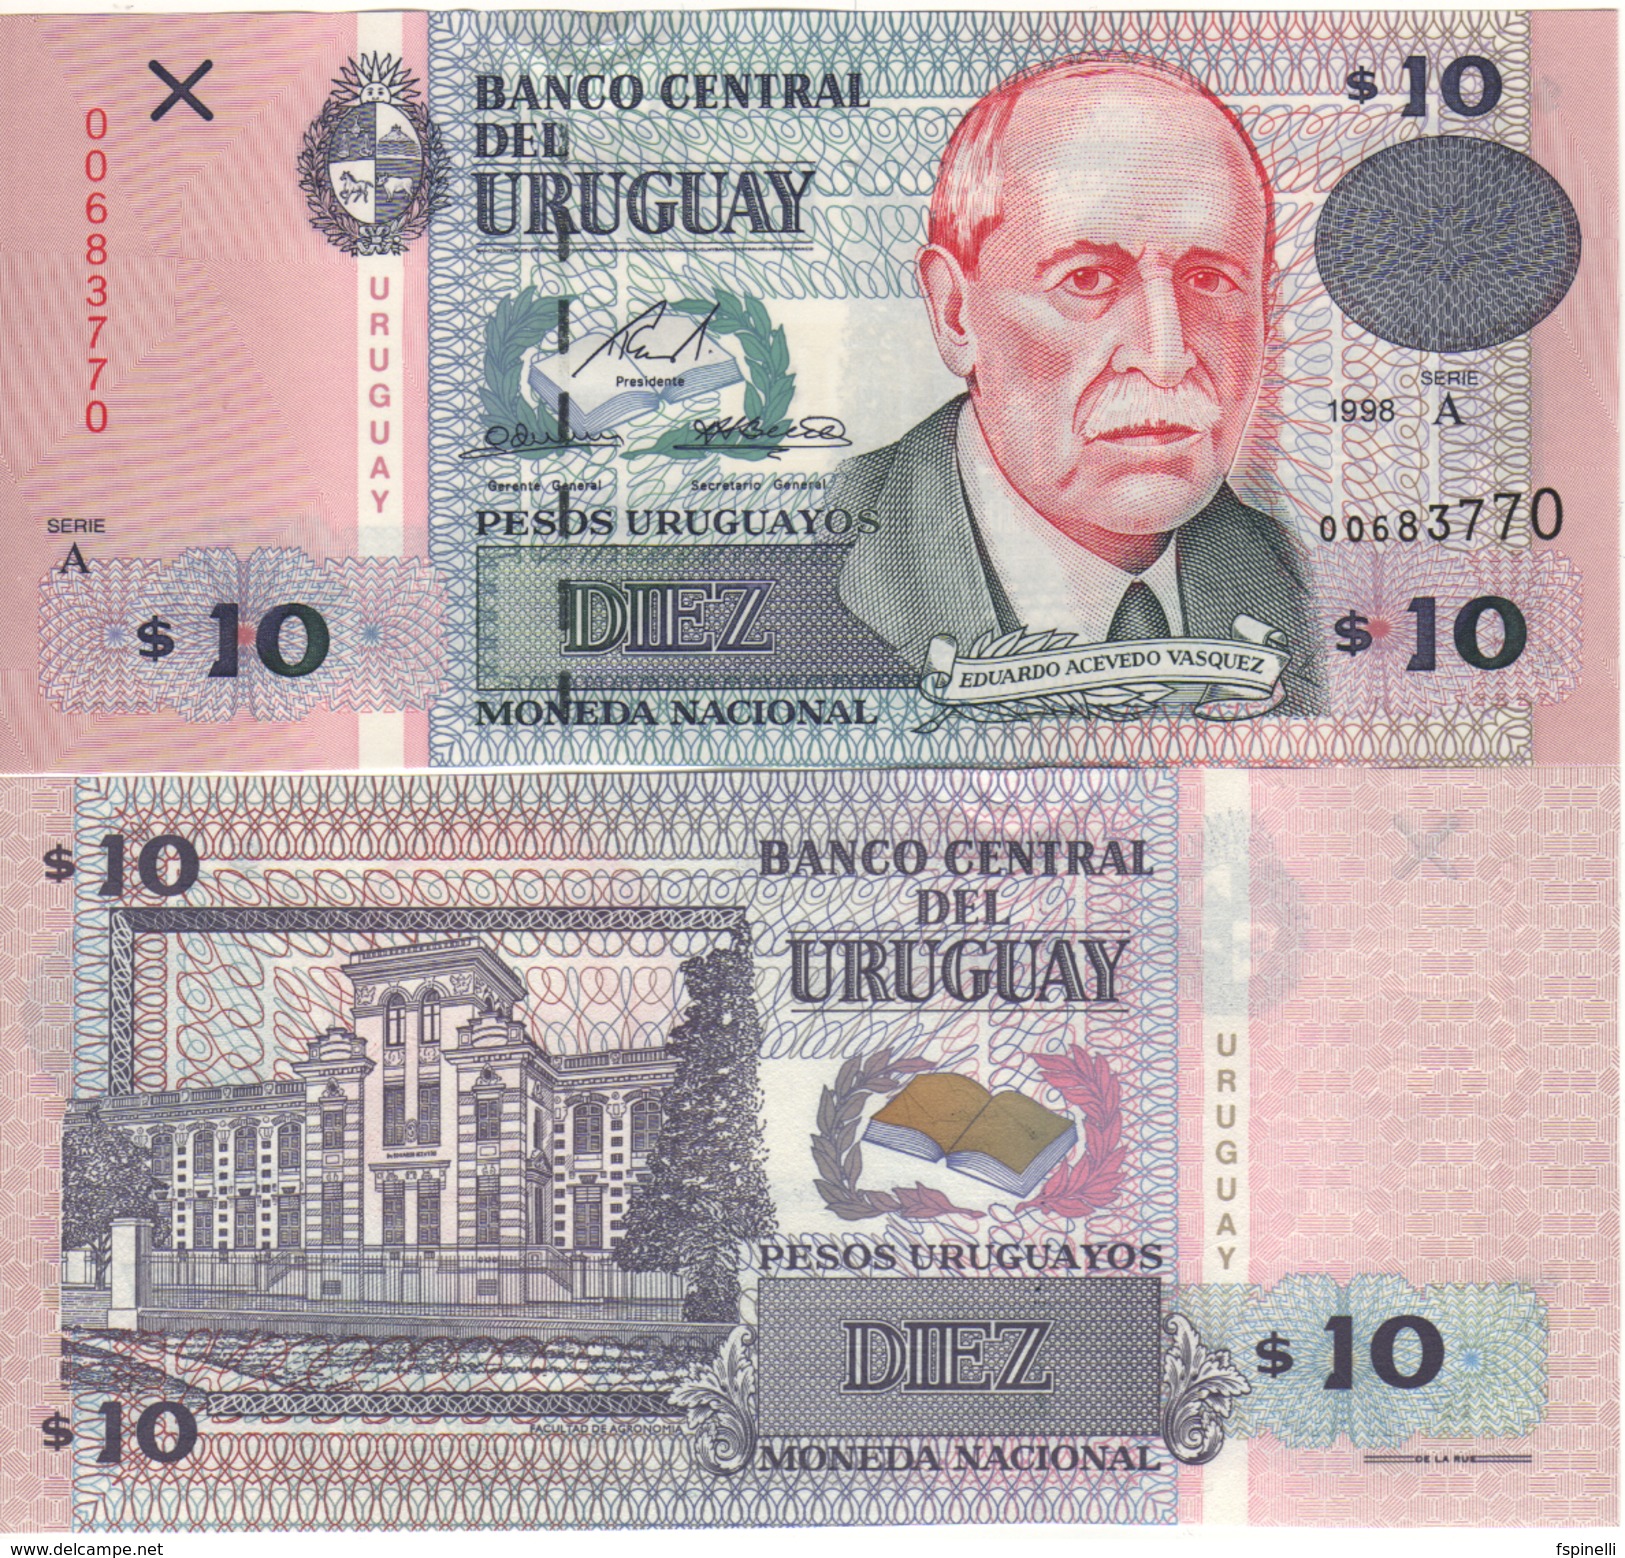 URUGUAY  10 Pesos Uruguayos P81  1998  Serie  A  UNC - Uruguay